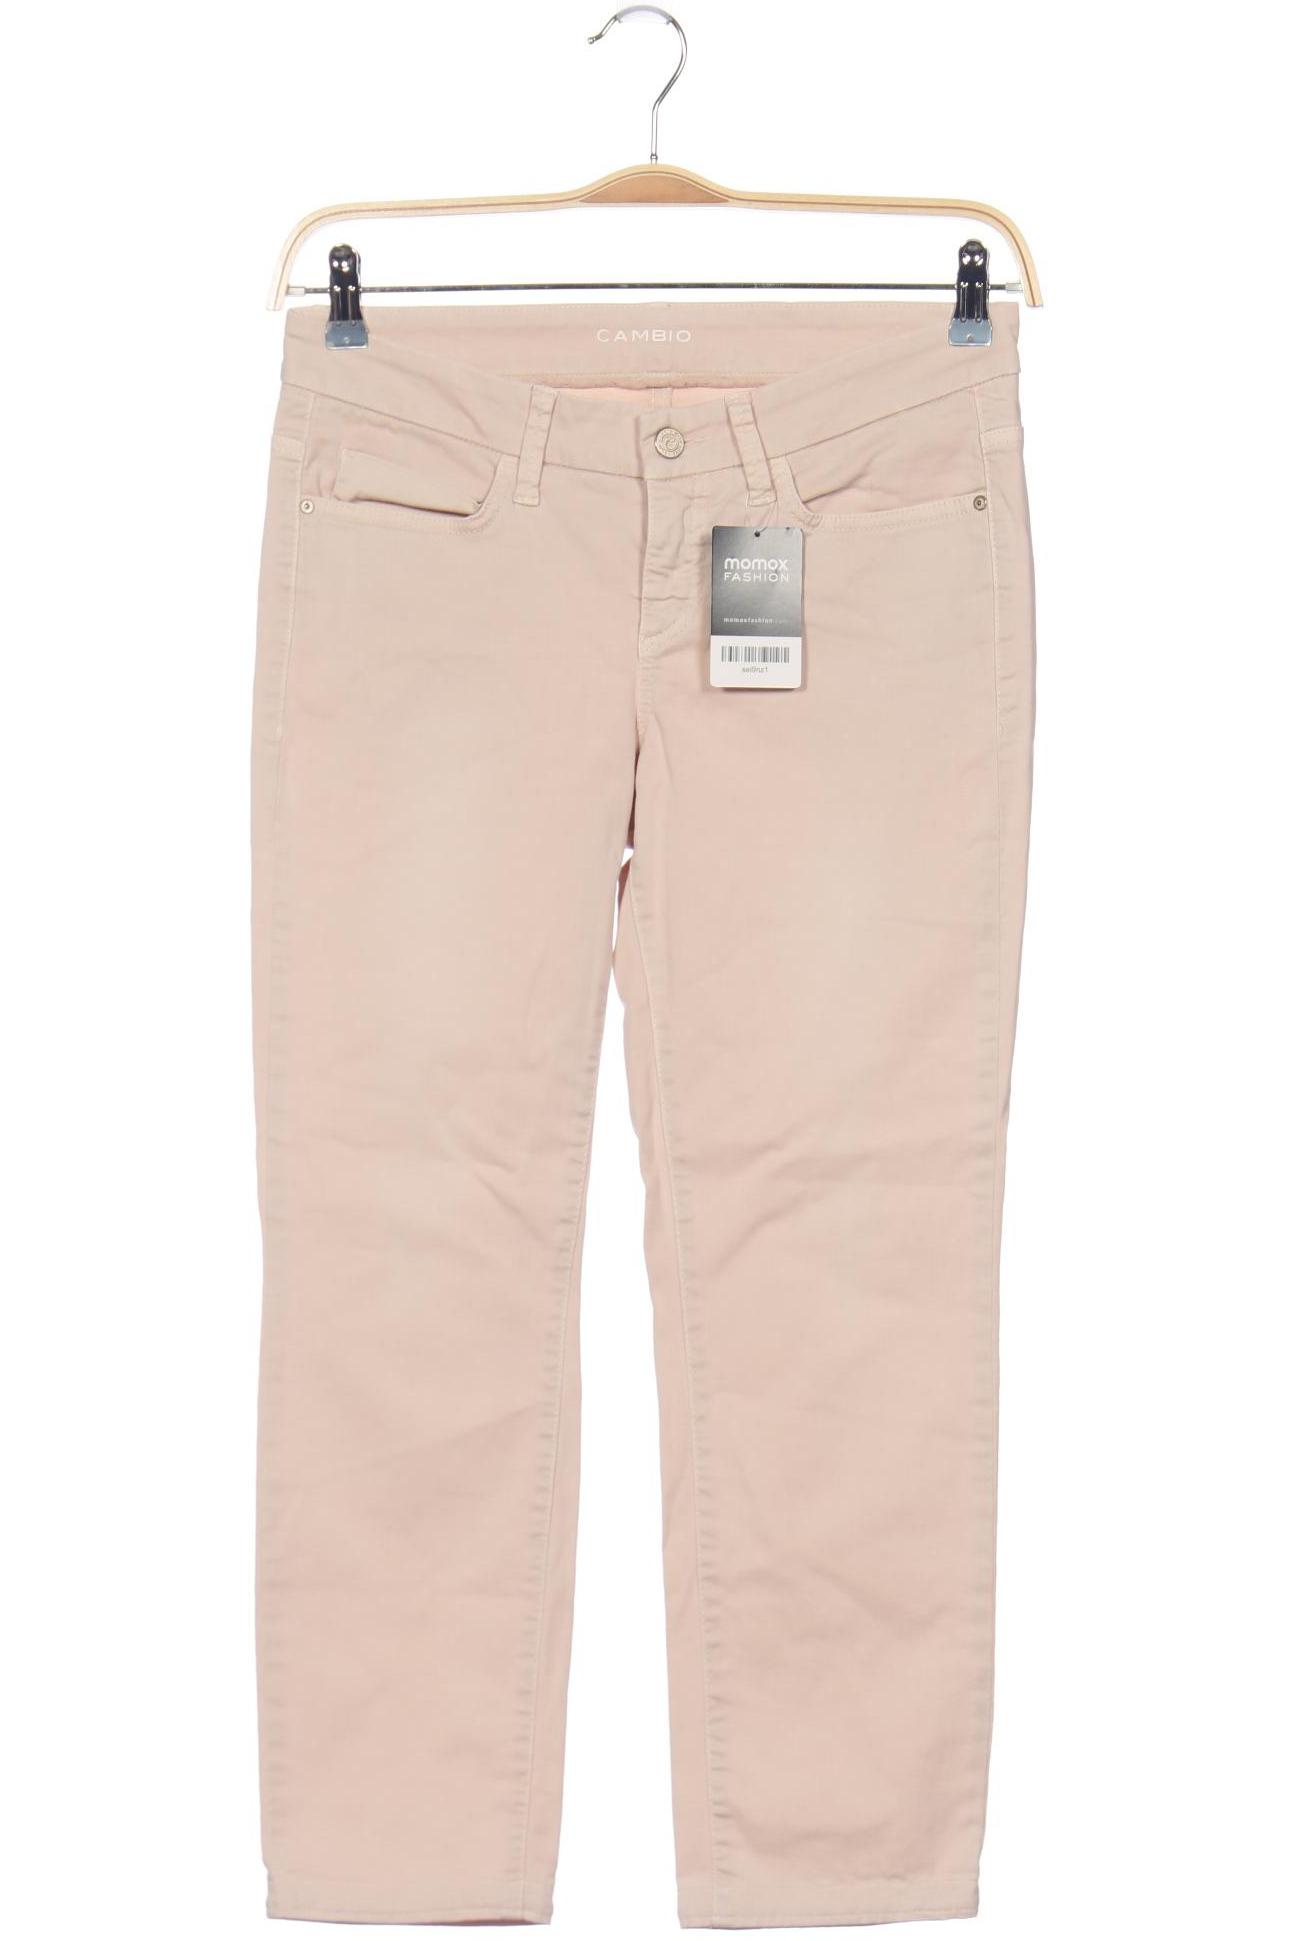 Cambio Damen Jeans, pink von CAMBIO